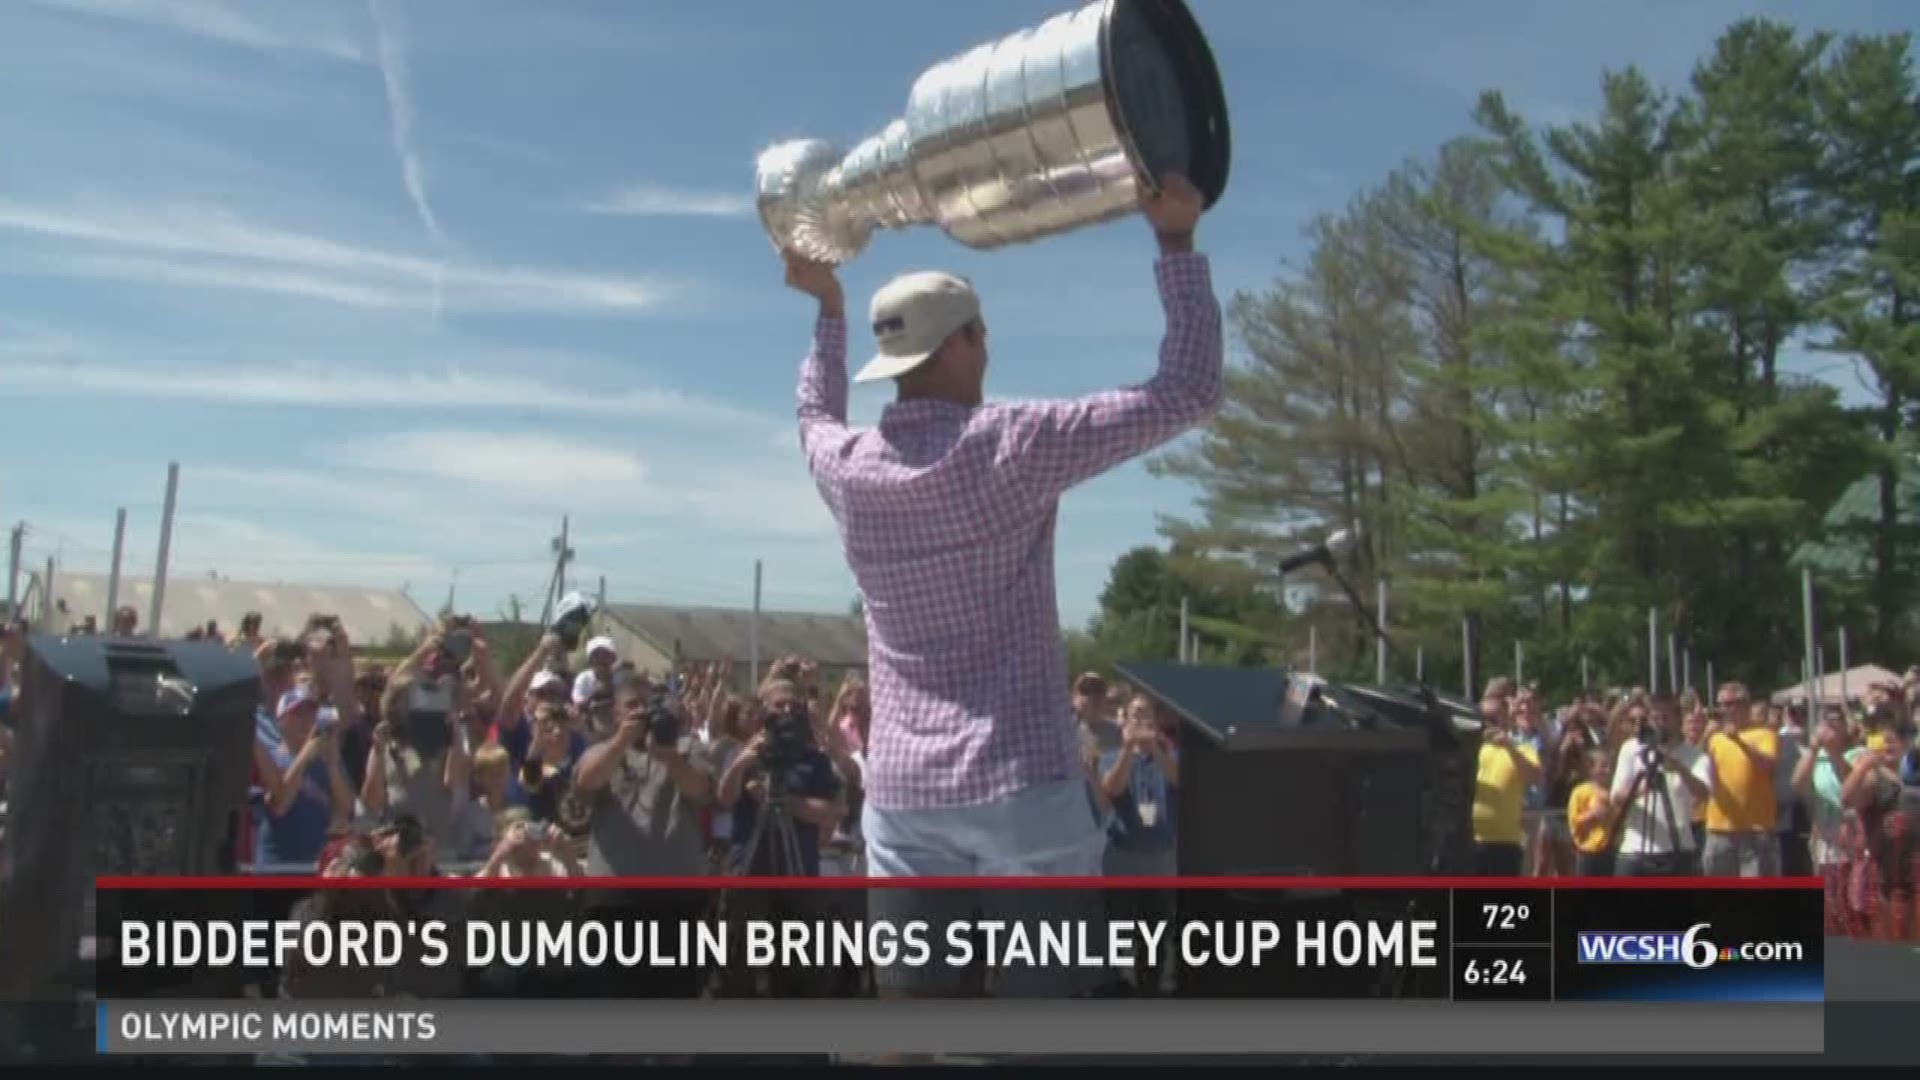 Biddeford's Dumoulin brings Stanley Cup home